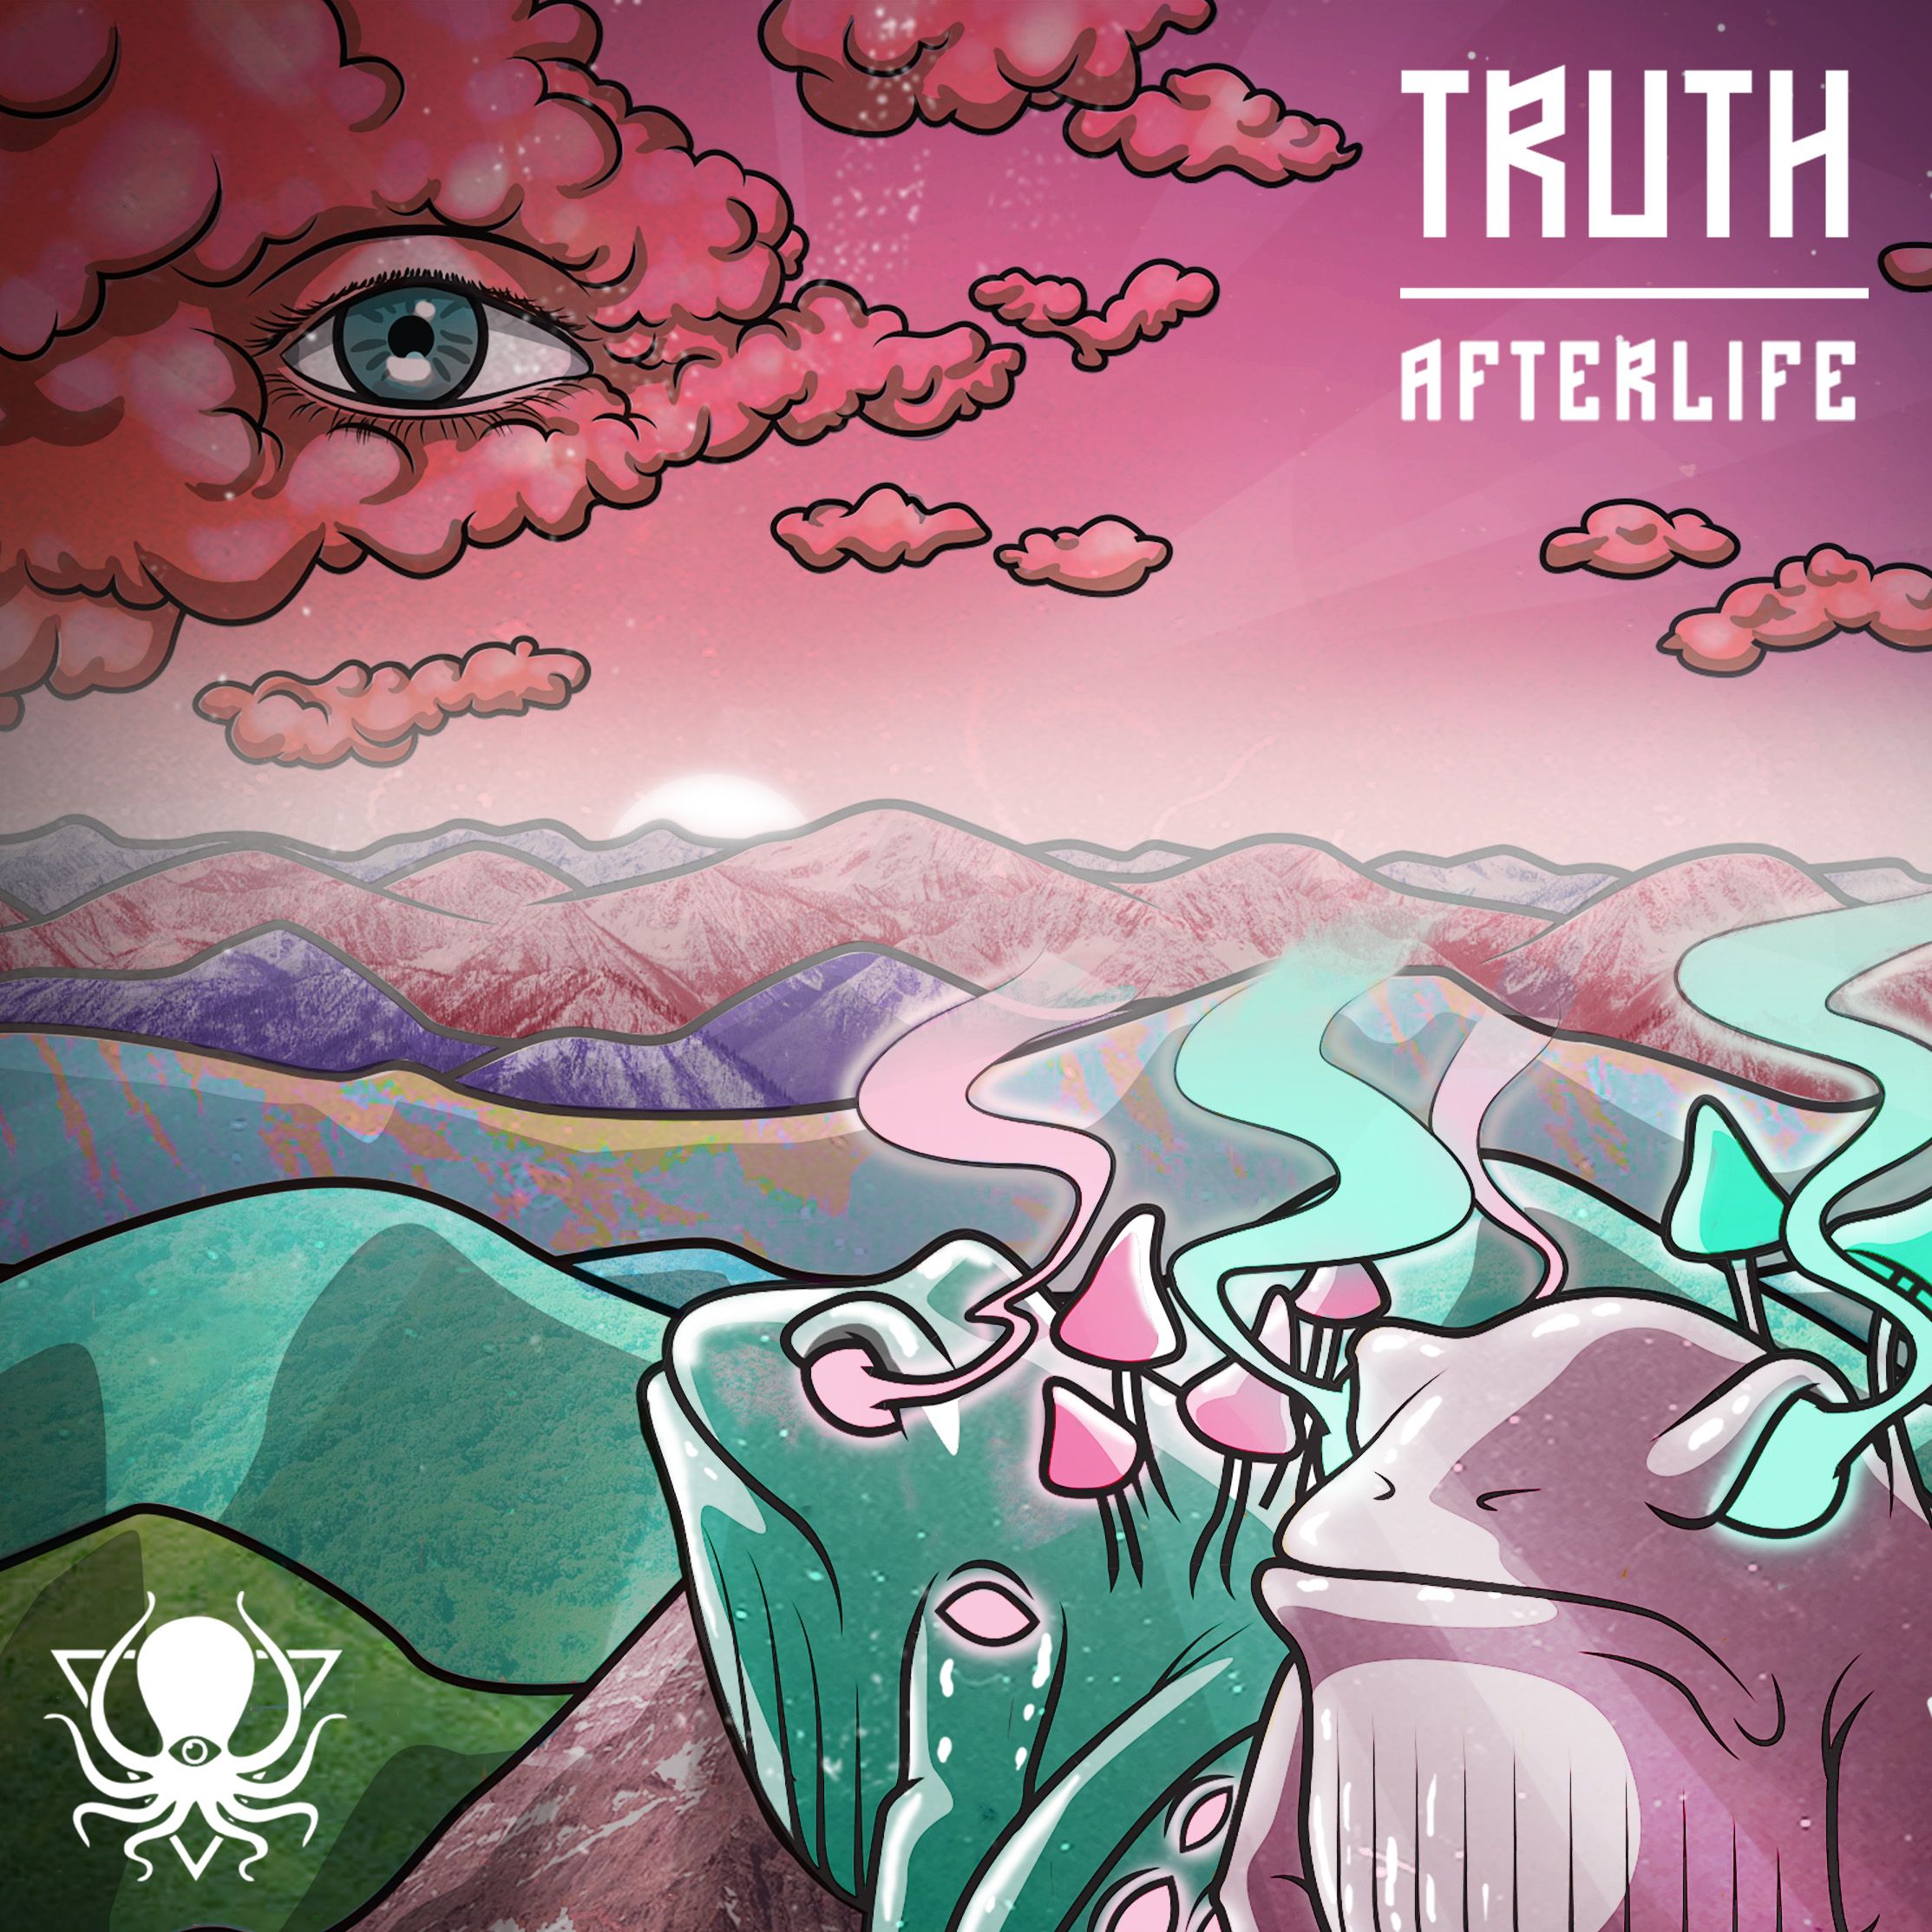 Íoslódáil Truth - Afterlife (DDD095)